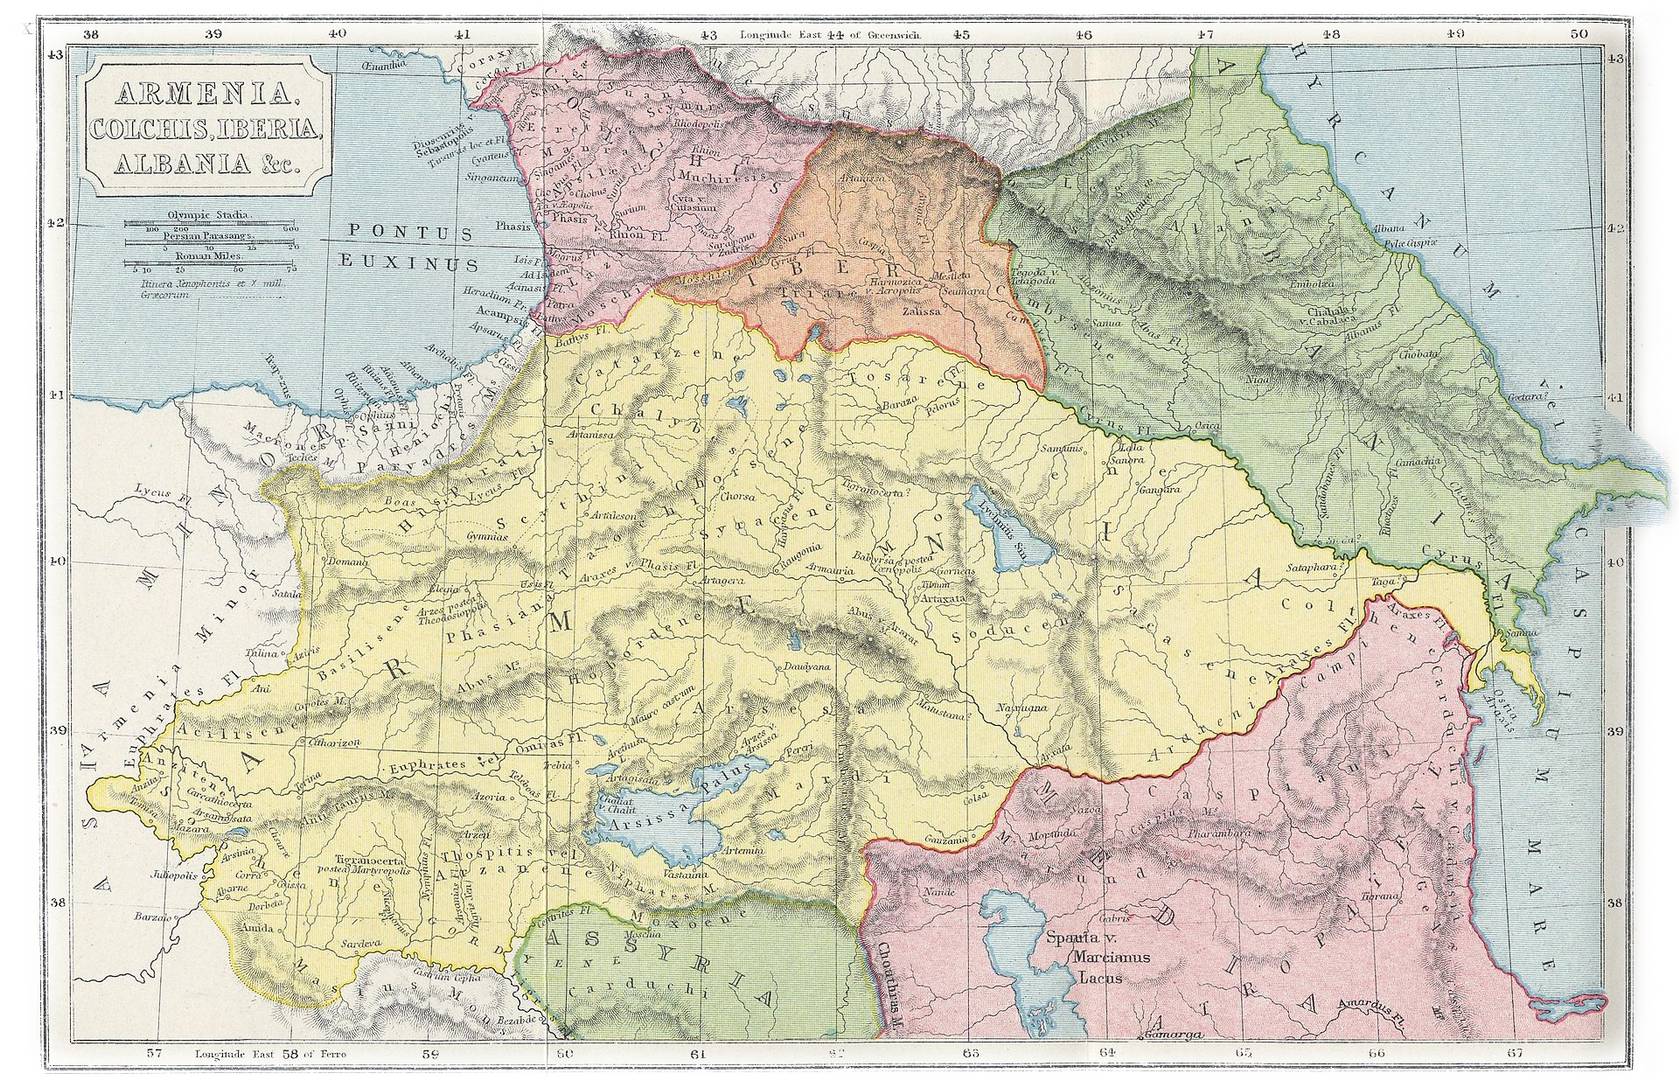 Карта «Армения, Колхида, Иберия, Албания и пр.» Из «Атласа классической и античной географии» Самуэля Батлера. XIX век